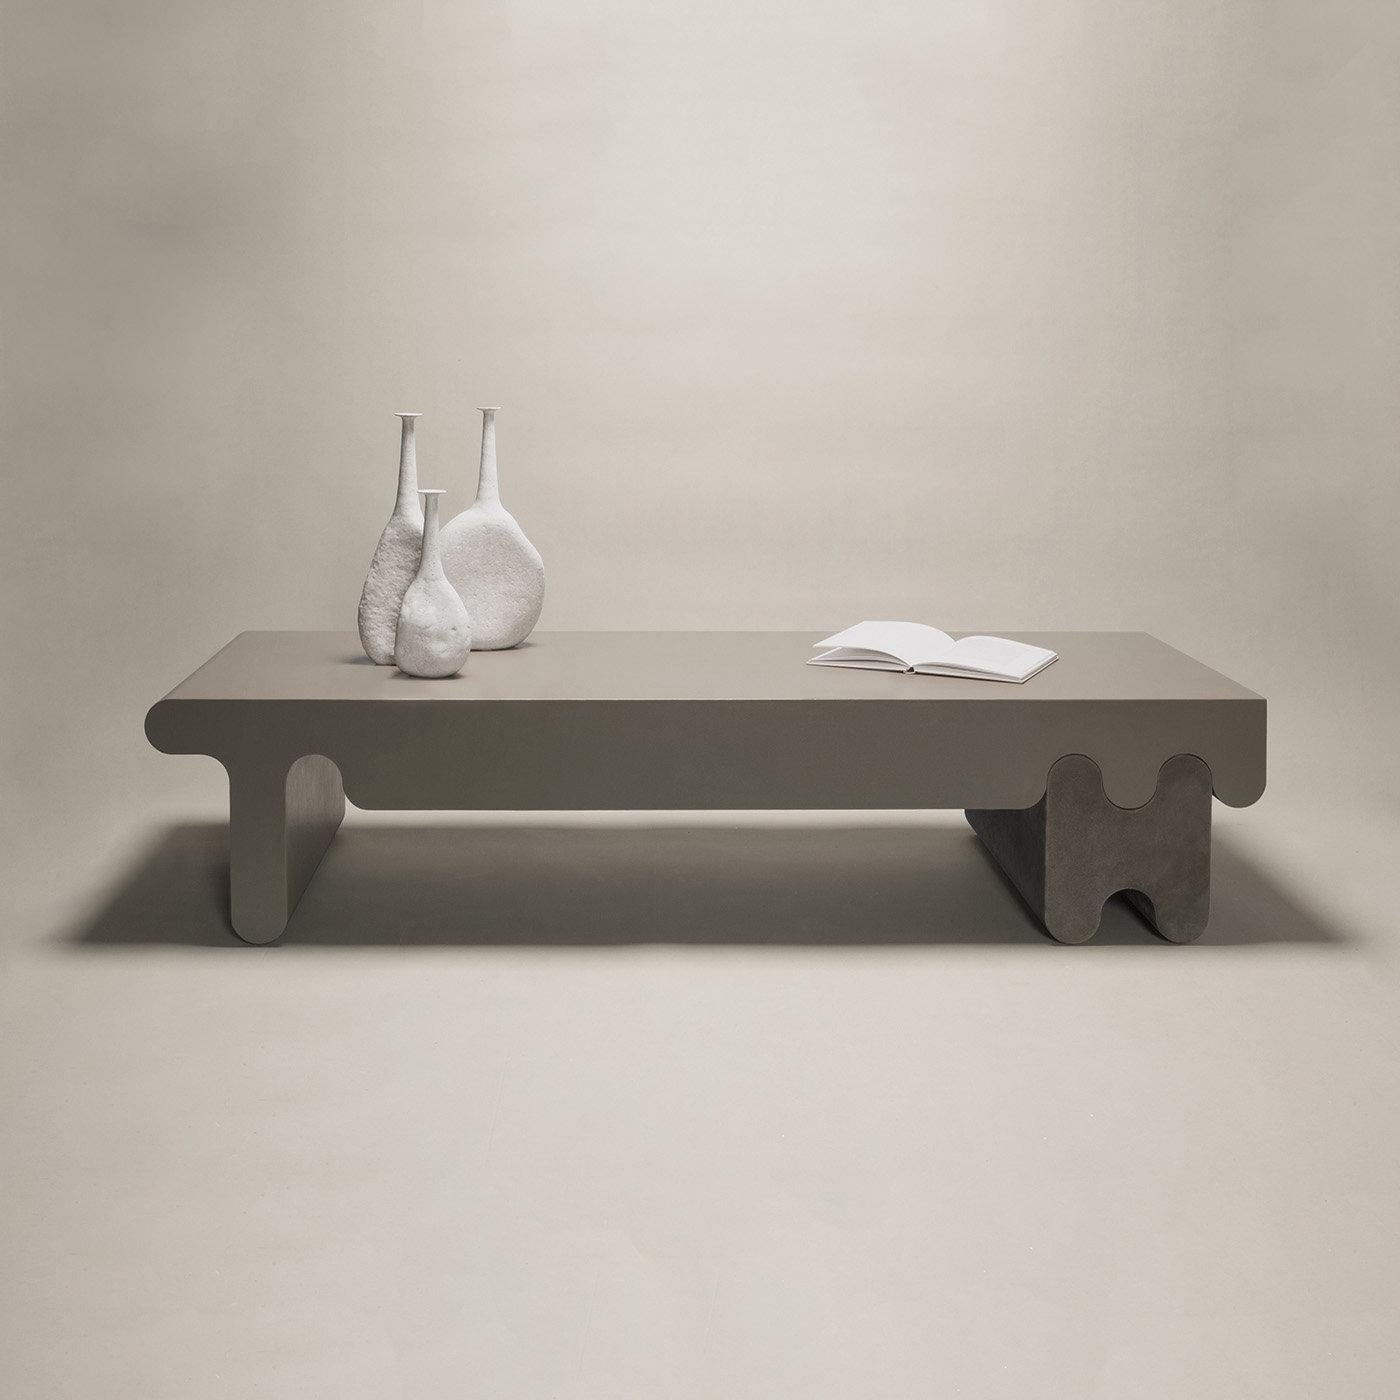 Table basse contemporaine en cuir - Ossicle de Francesco Balzano pour Giobagnara.
L'objet présenté dans l'image a la finition suivante : F83 cuir nappa stone (haut) et A24 cuir suédé smoke (jambes).

Faisant partie d'une série exquise de bancs,